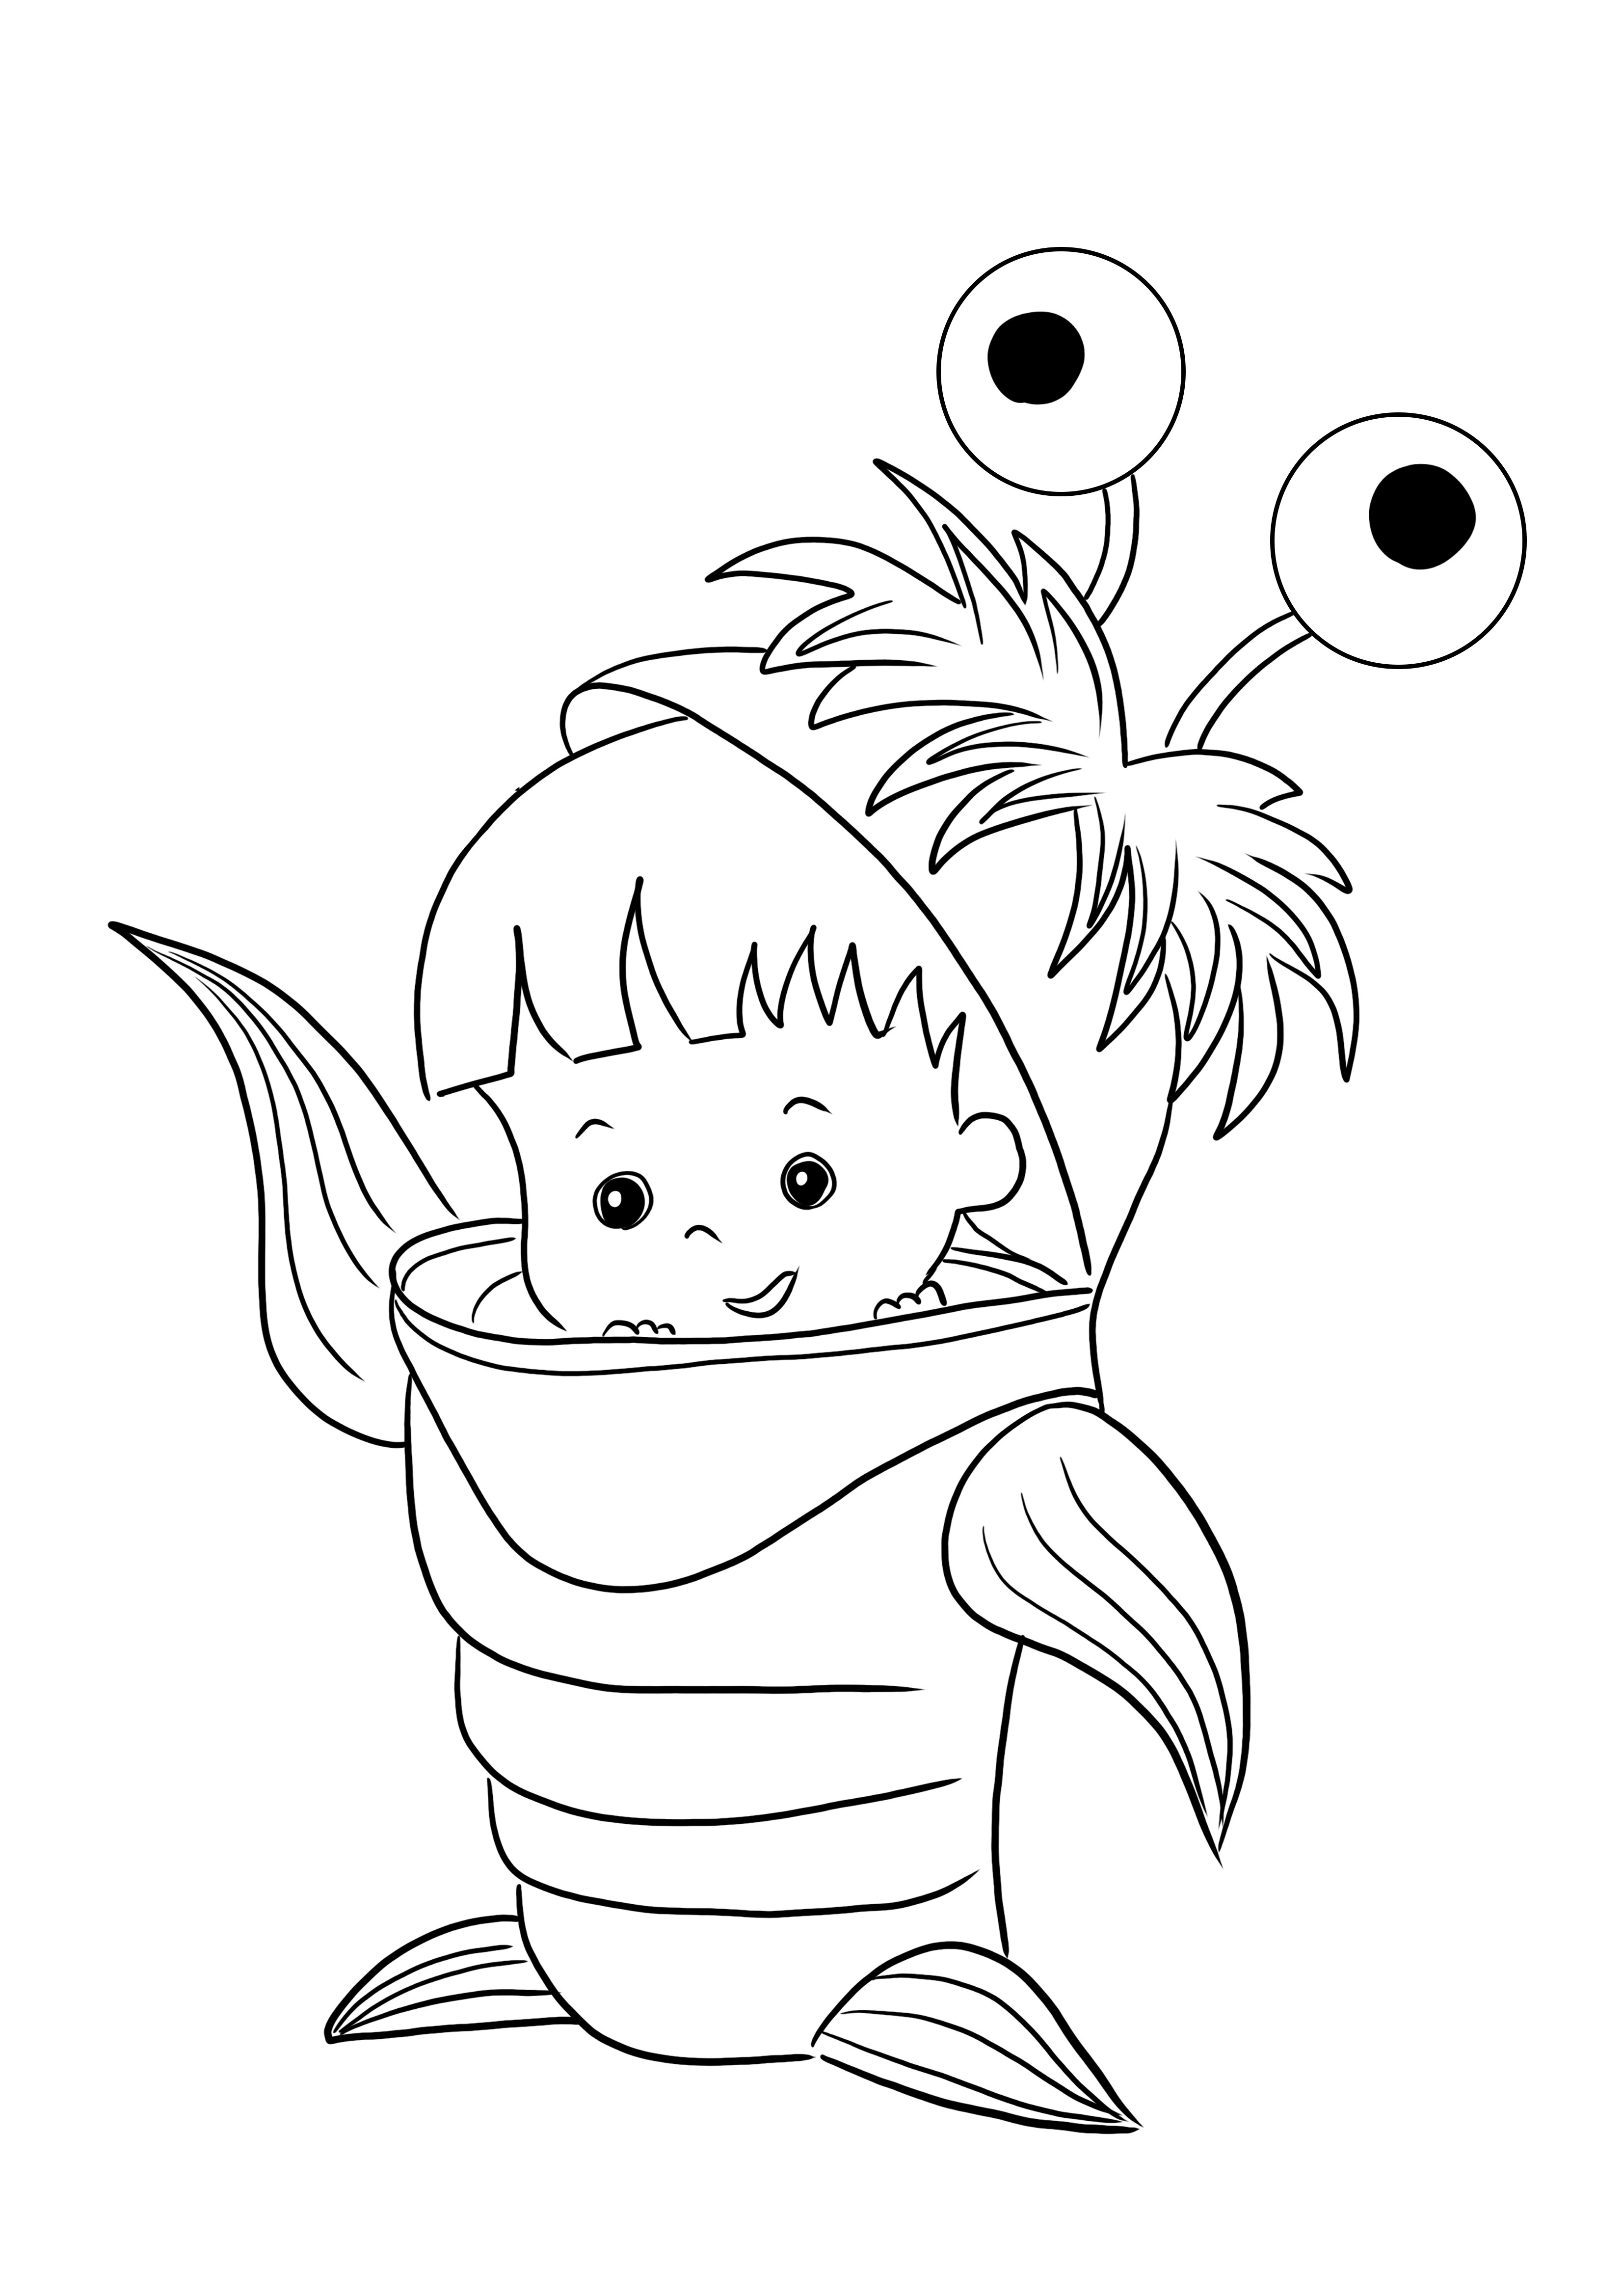 Un joli coloriage du petit Boo dans un costume de Monstre à imprimer gratuitement pour colorier en s'amusant